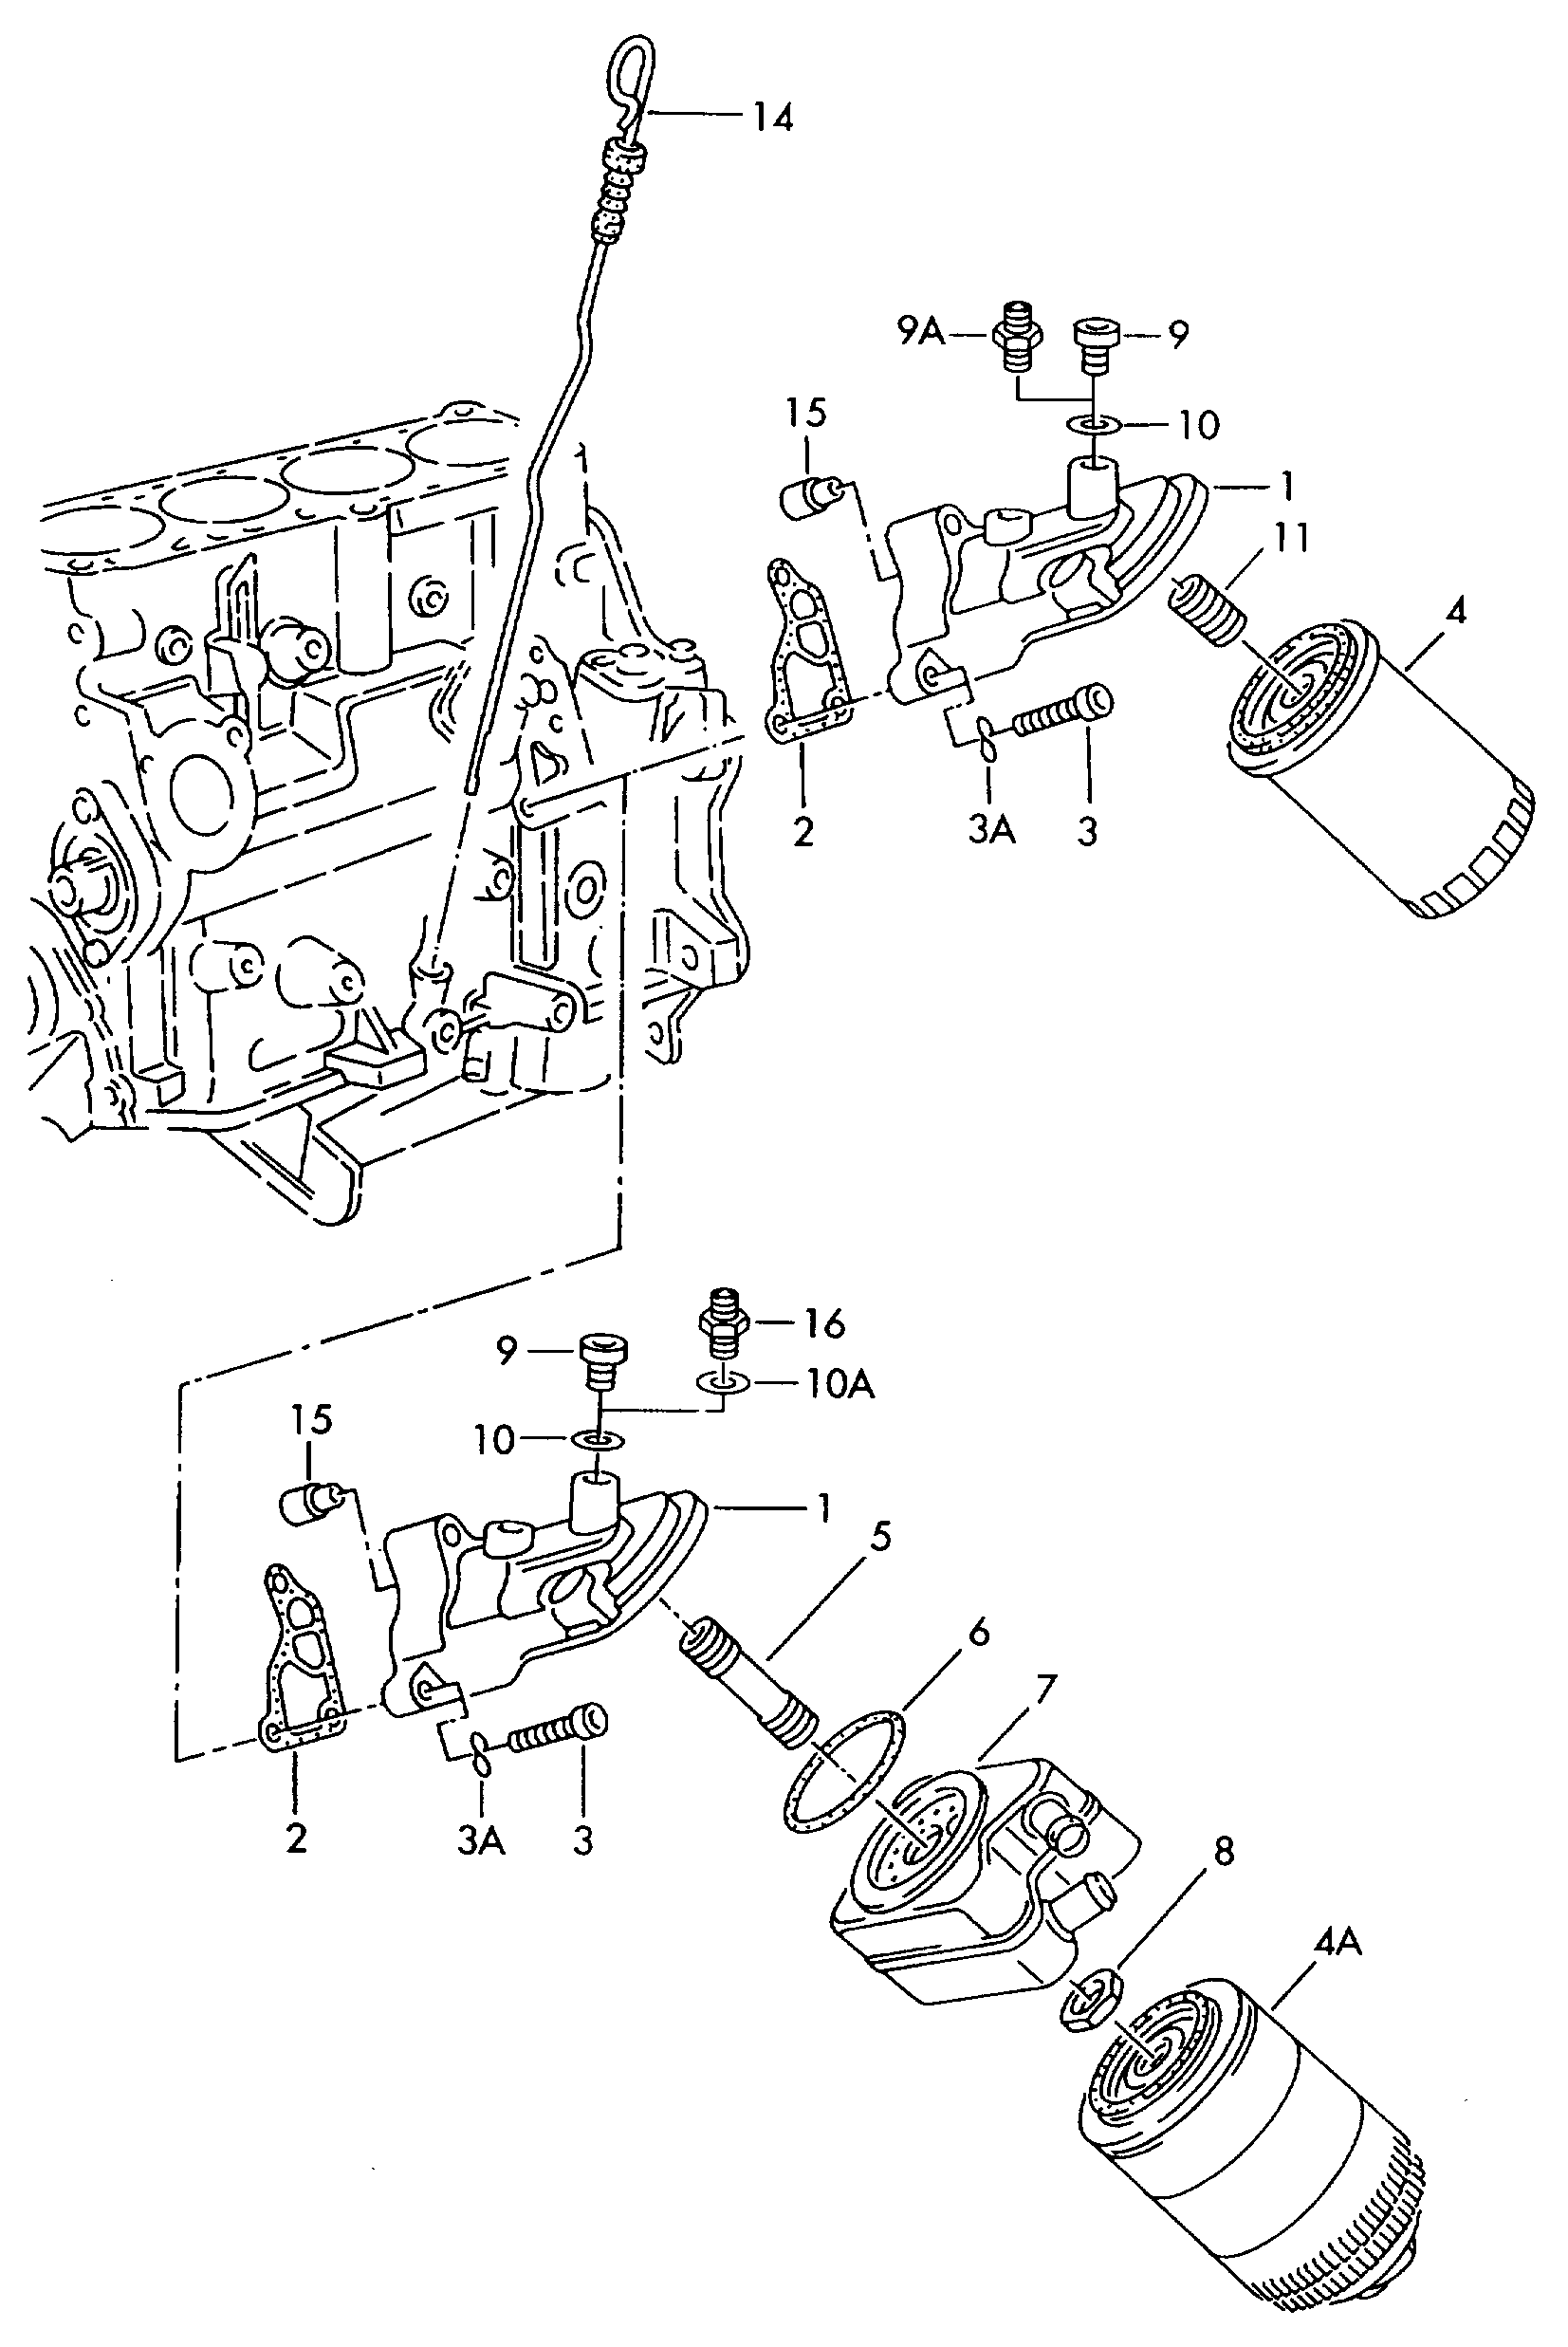 filtr olejovy; drzak olejoveho filtru; merka oleje - Audi 80/90/Avant(A80)  